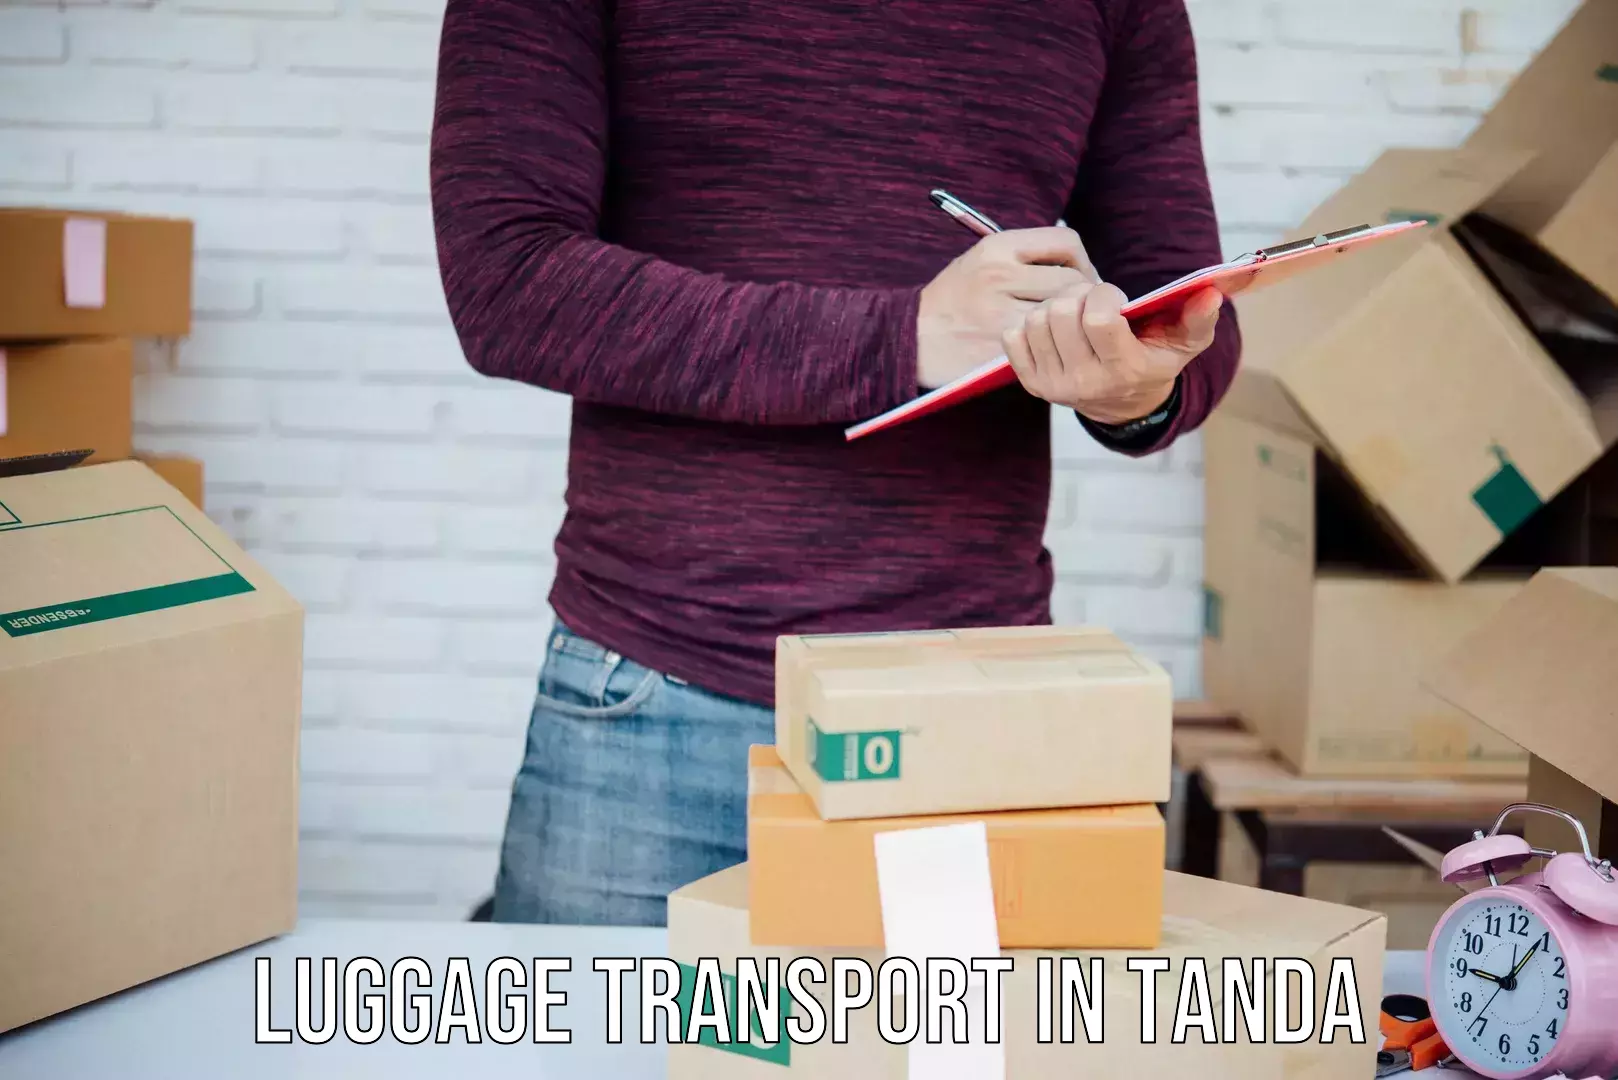 Urban luggage shipping in Tanda